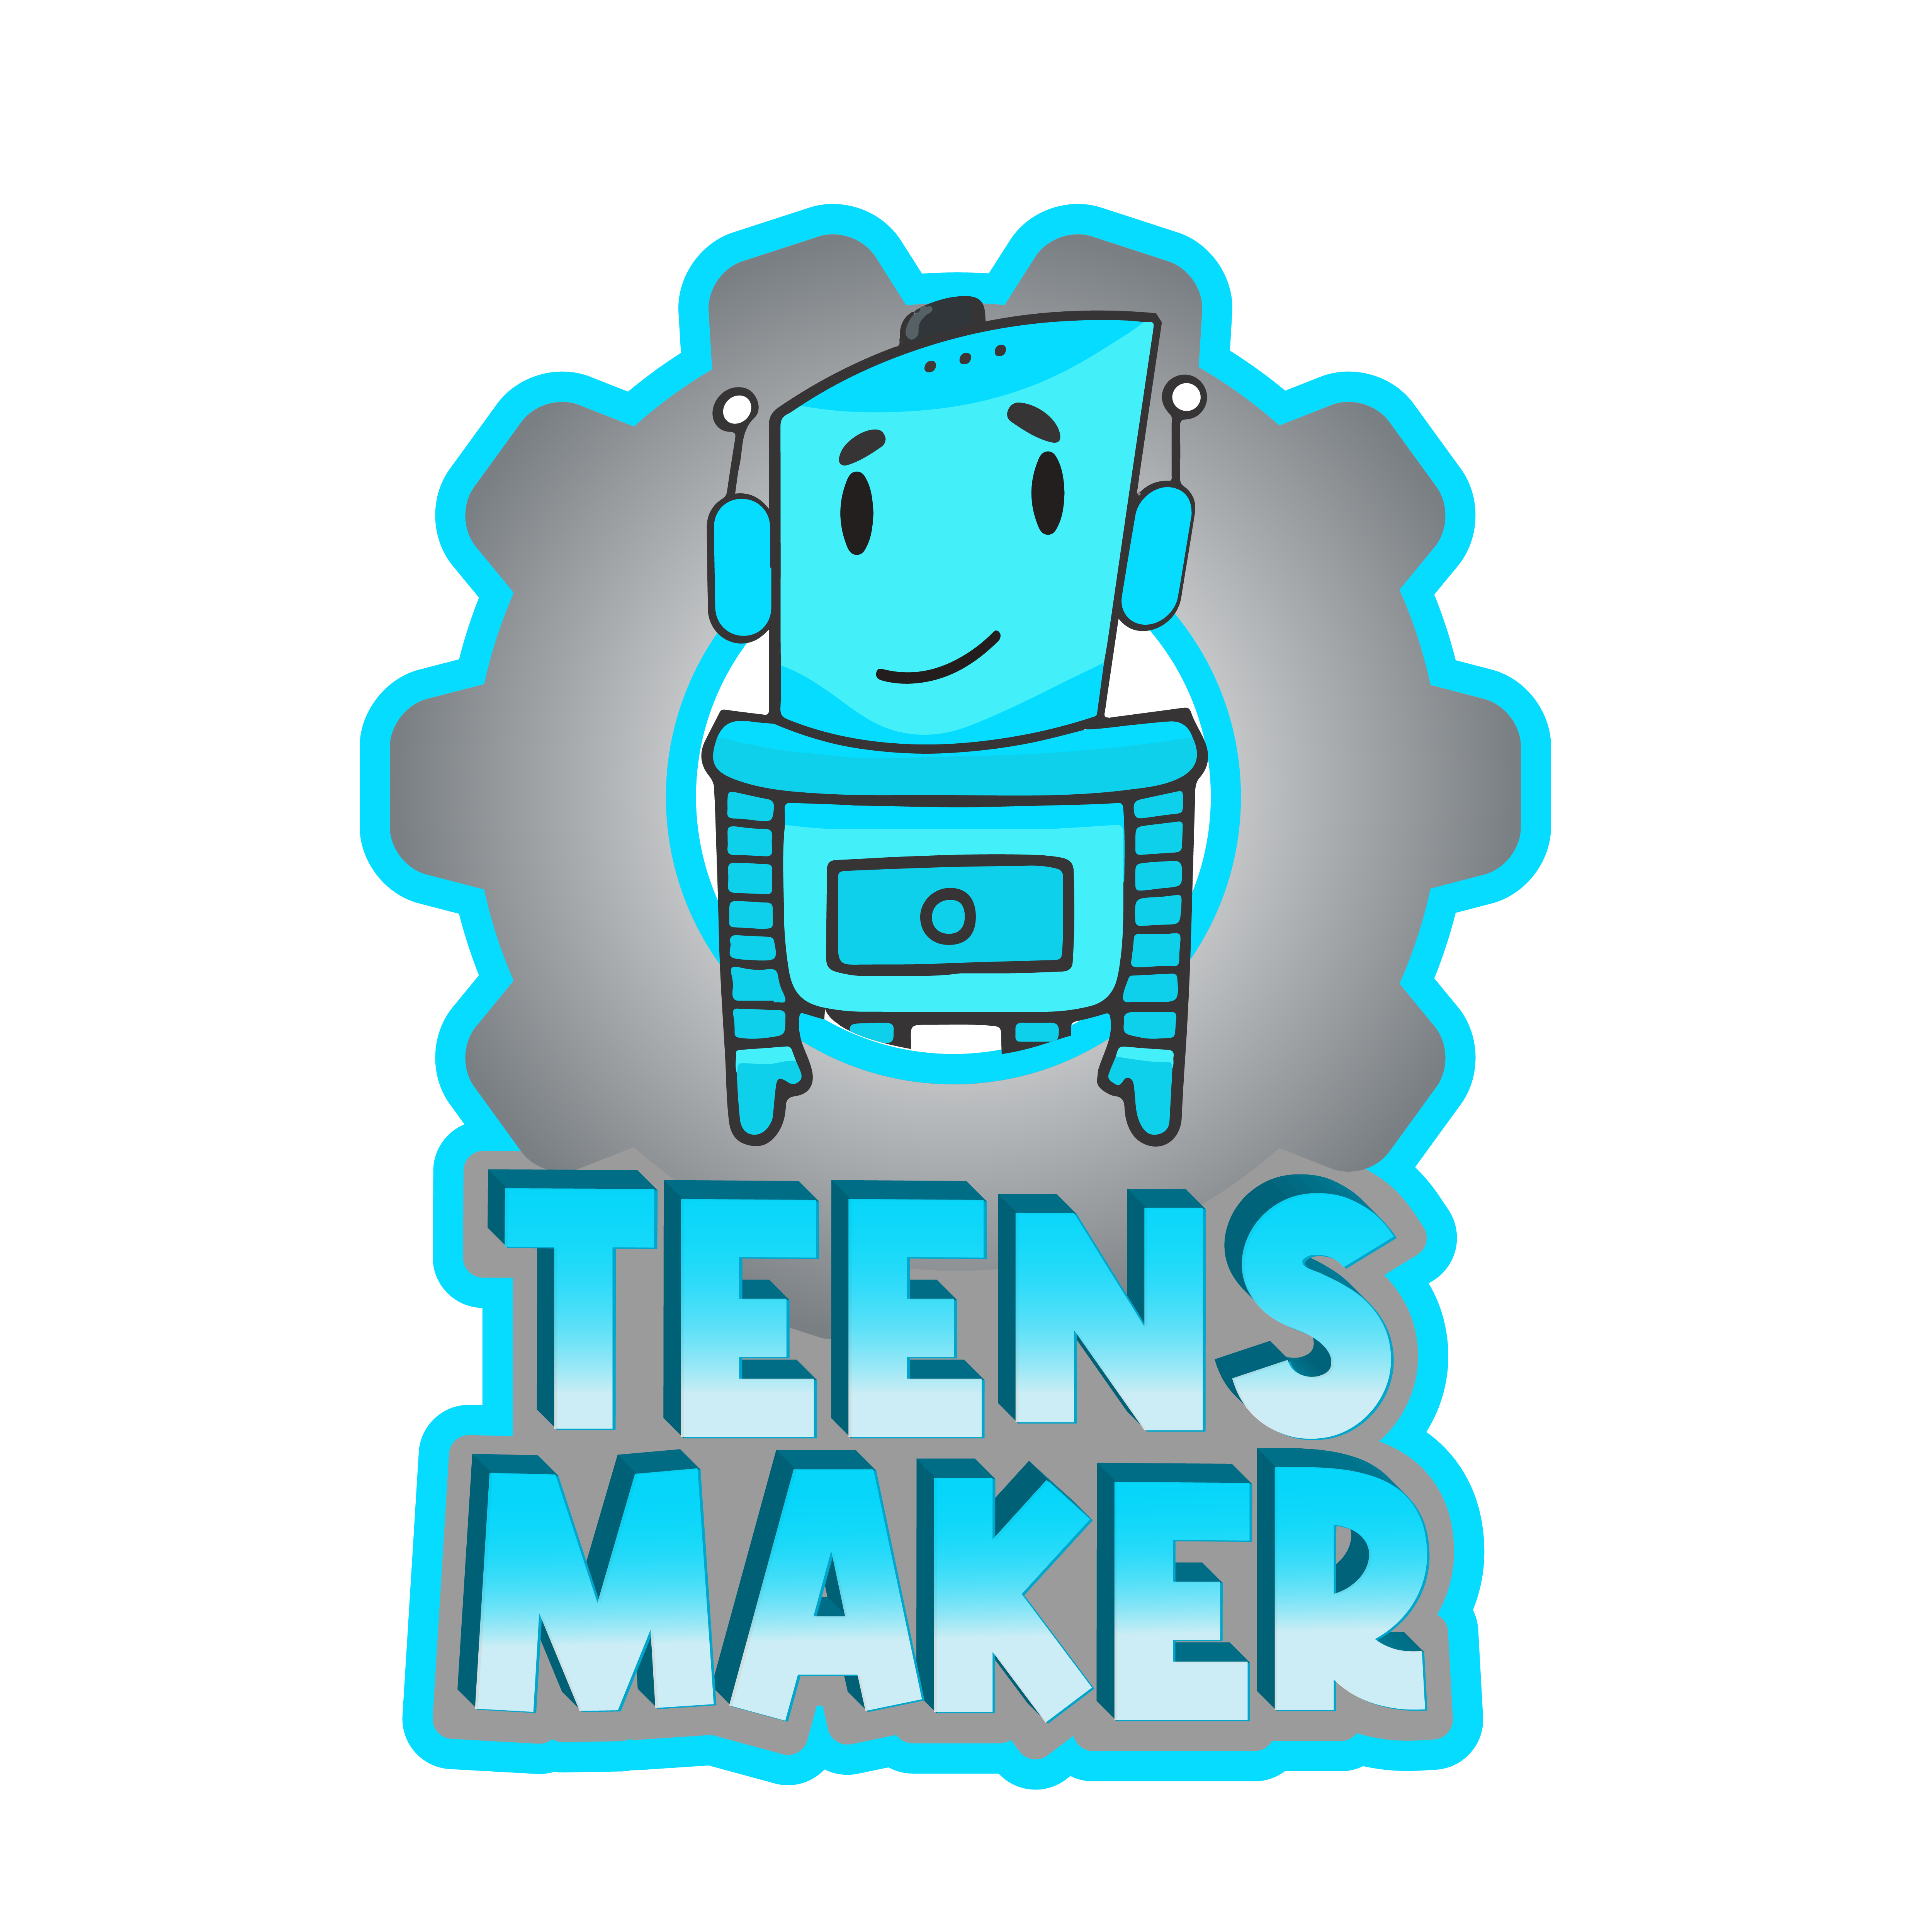 Teens Maker Avanzado